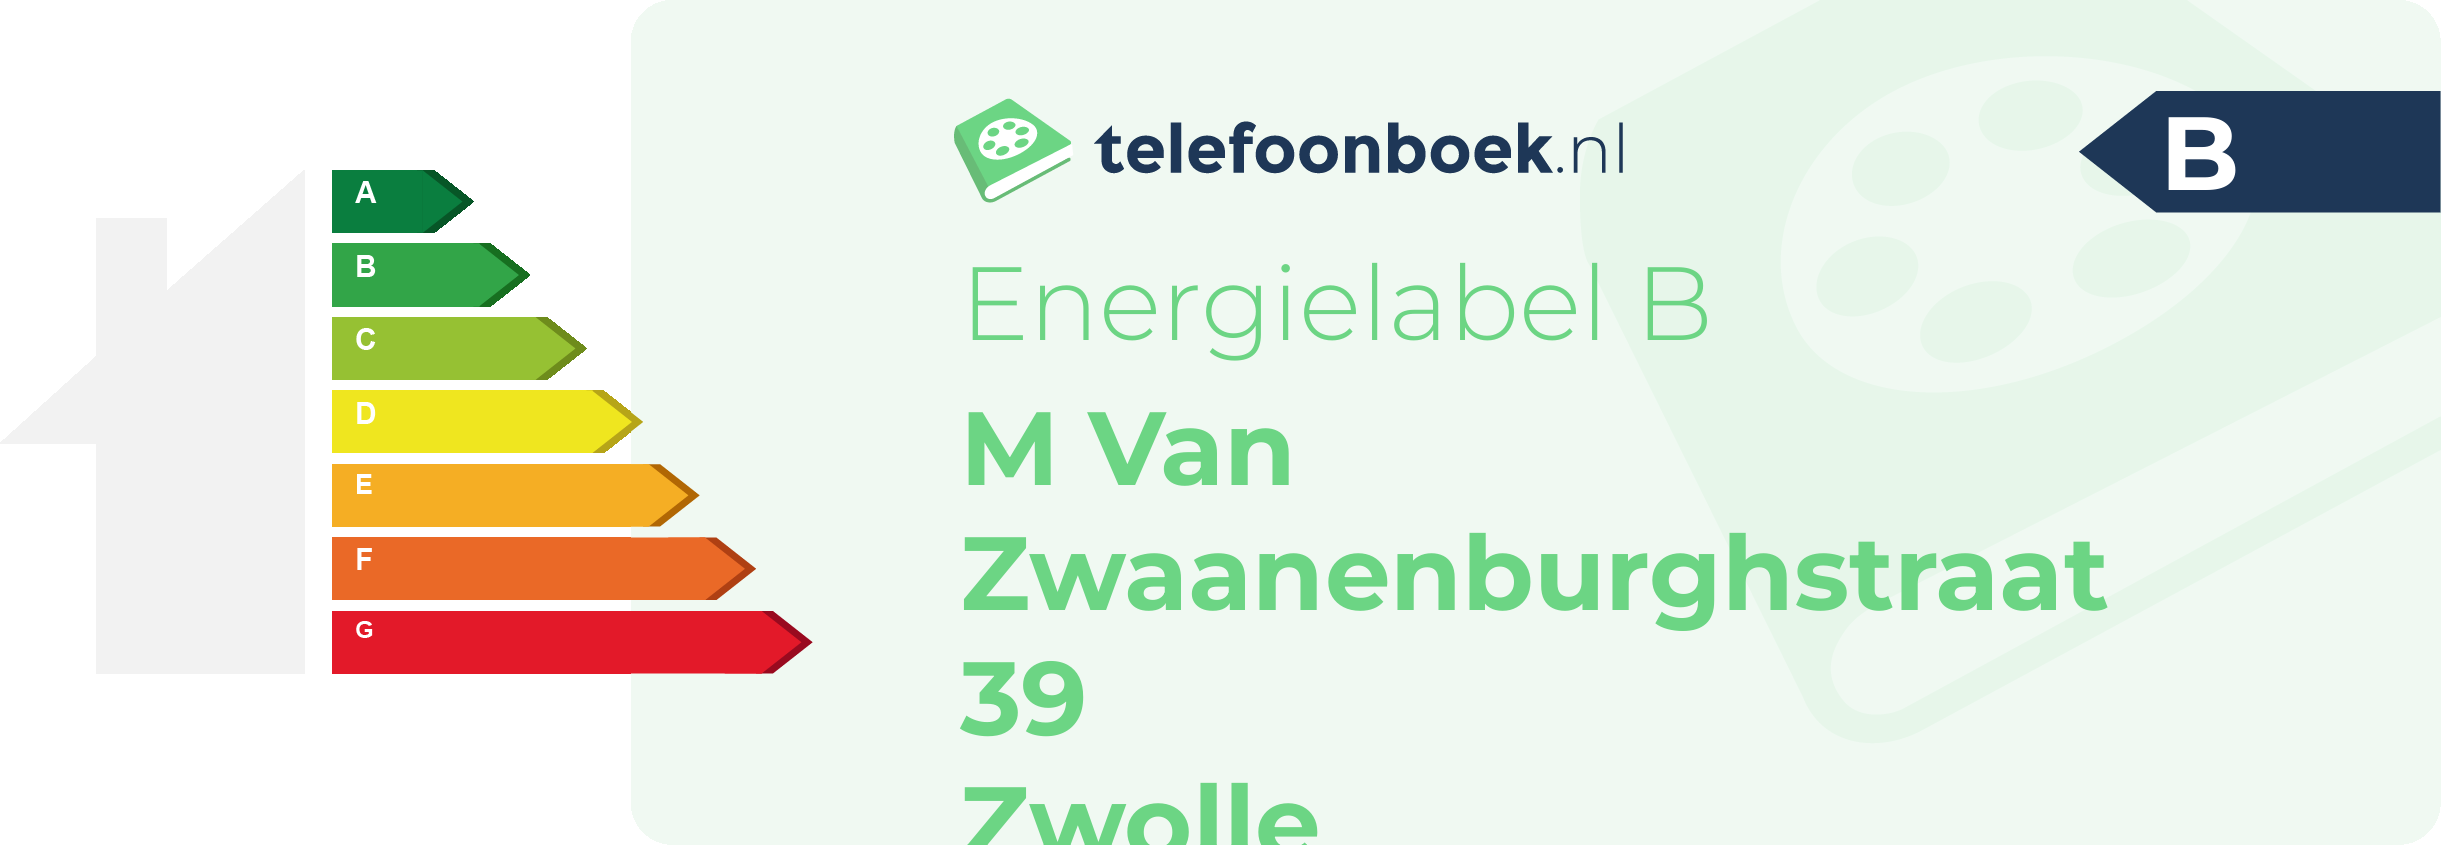 Energielabel M Van Zwaanenburghstraat 39 Zwolle